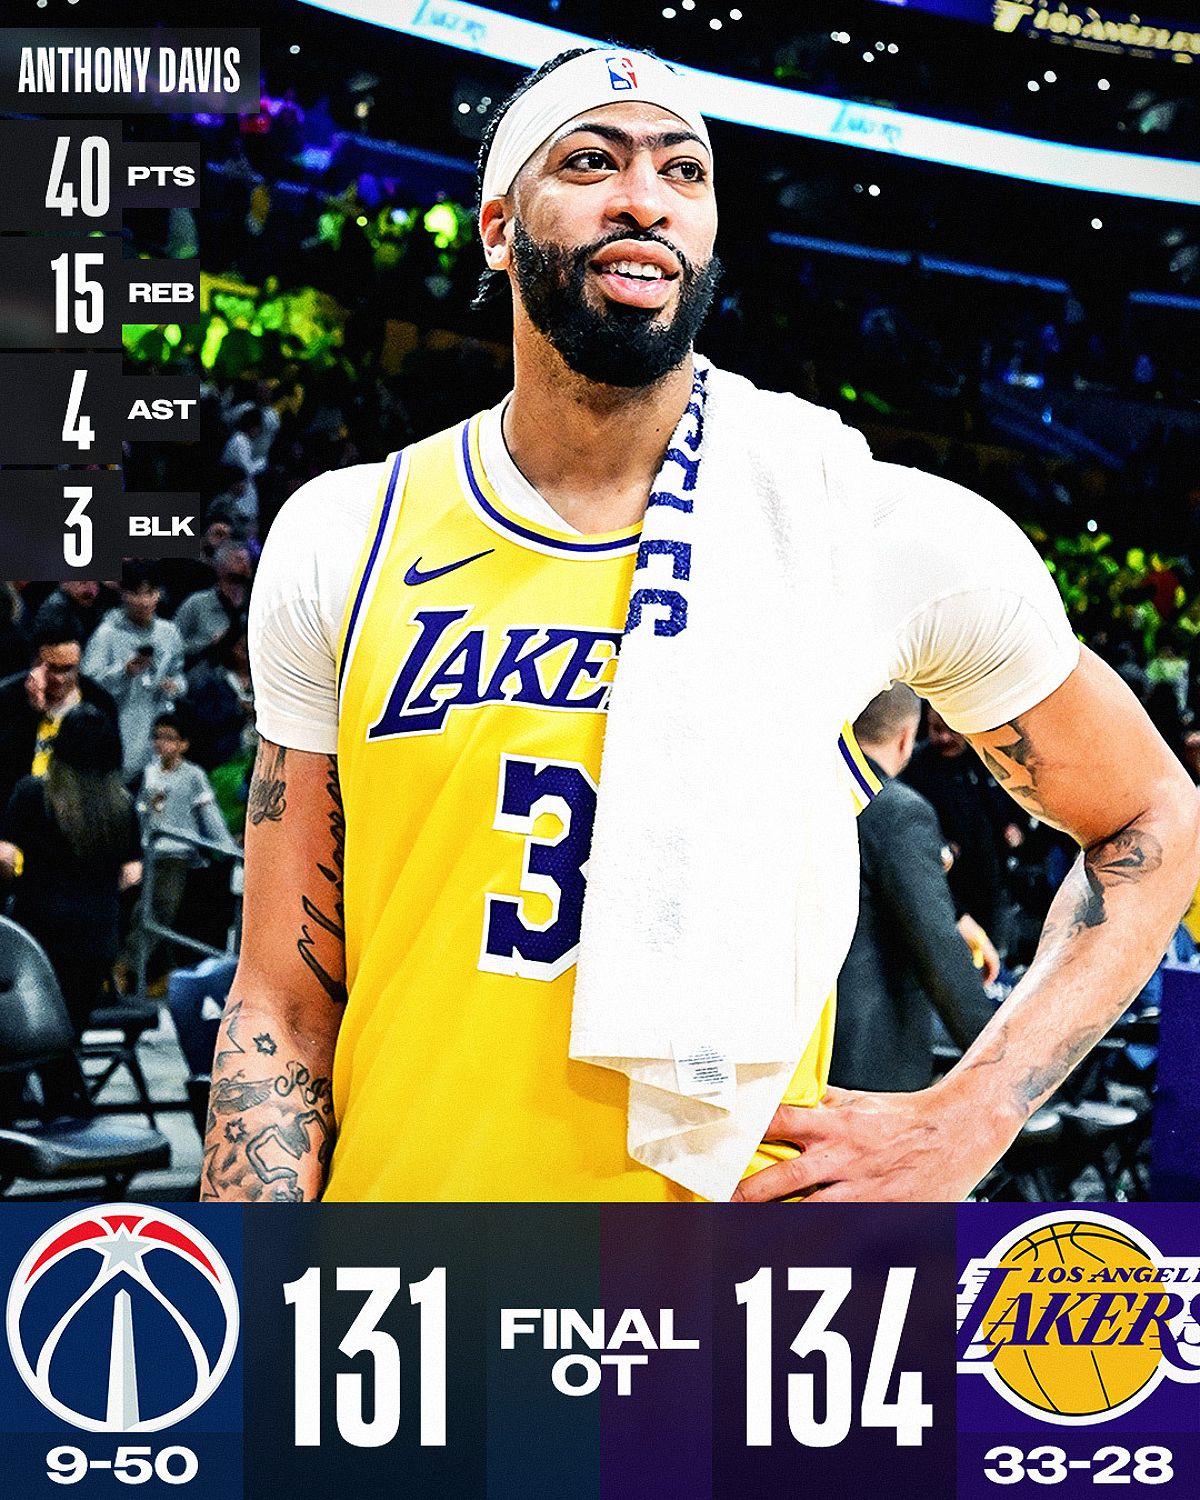 Los Angeles Lakers giành chiến thắng sau hiệp phụ, Anthony Davis tỏa sáng với 40 điểm - -767406515